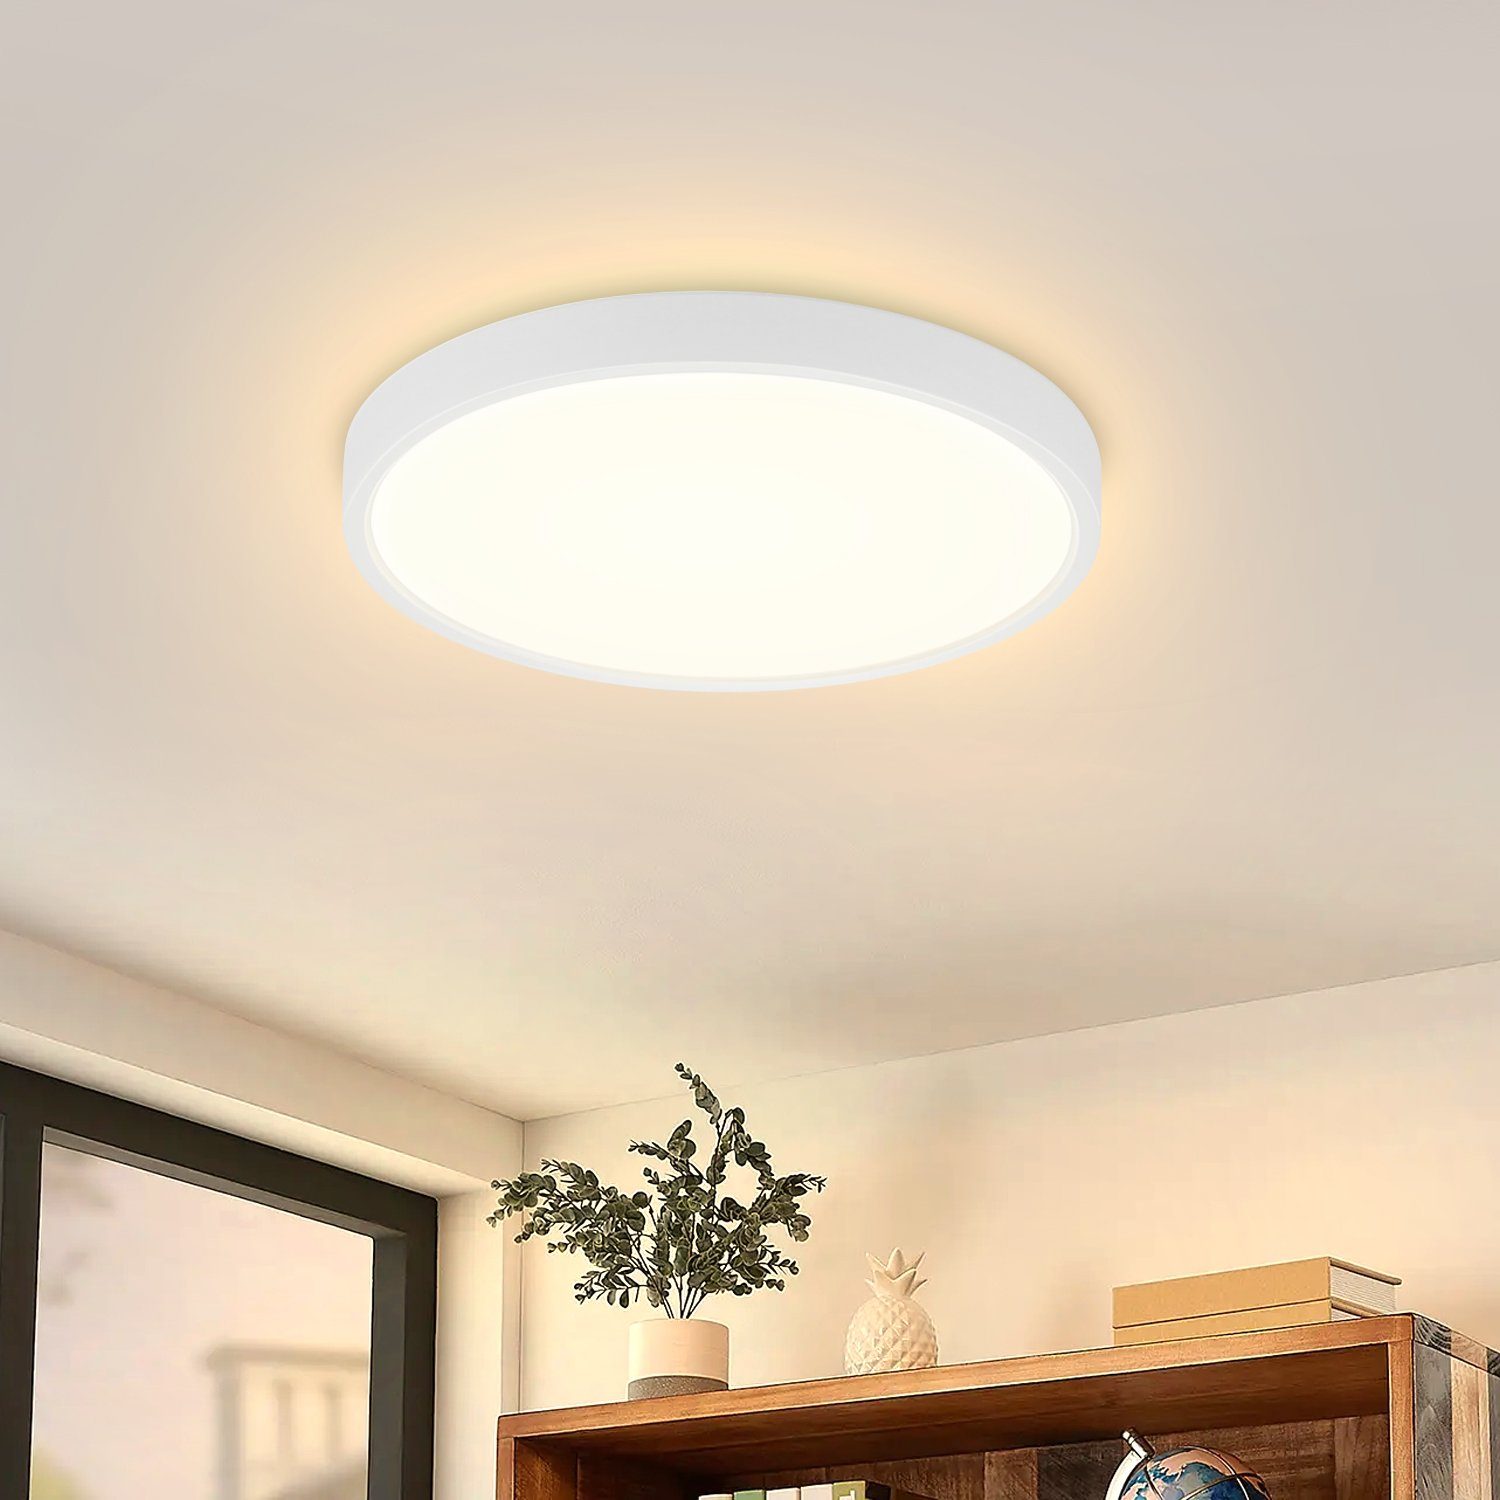 Nettlife LED Panel Deckenleuchte WeißFlach 8W Klein Deckenbeleuchtung Rund Ø17CM, IP44 Wasserdicht, LED fest integriert, Warmweiß, für Badezimmer Flur Küche Balkon Schlafzimmer